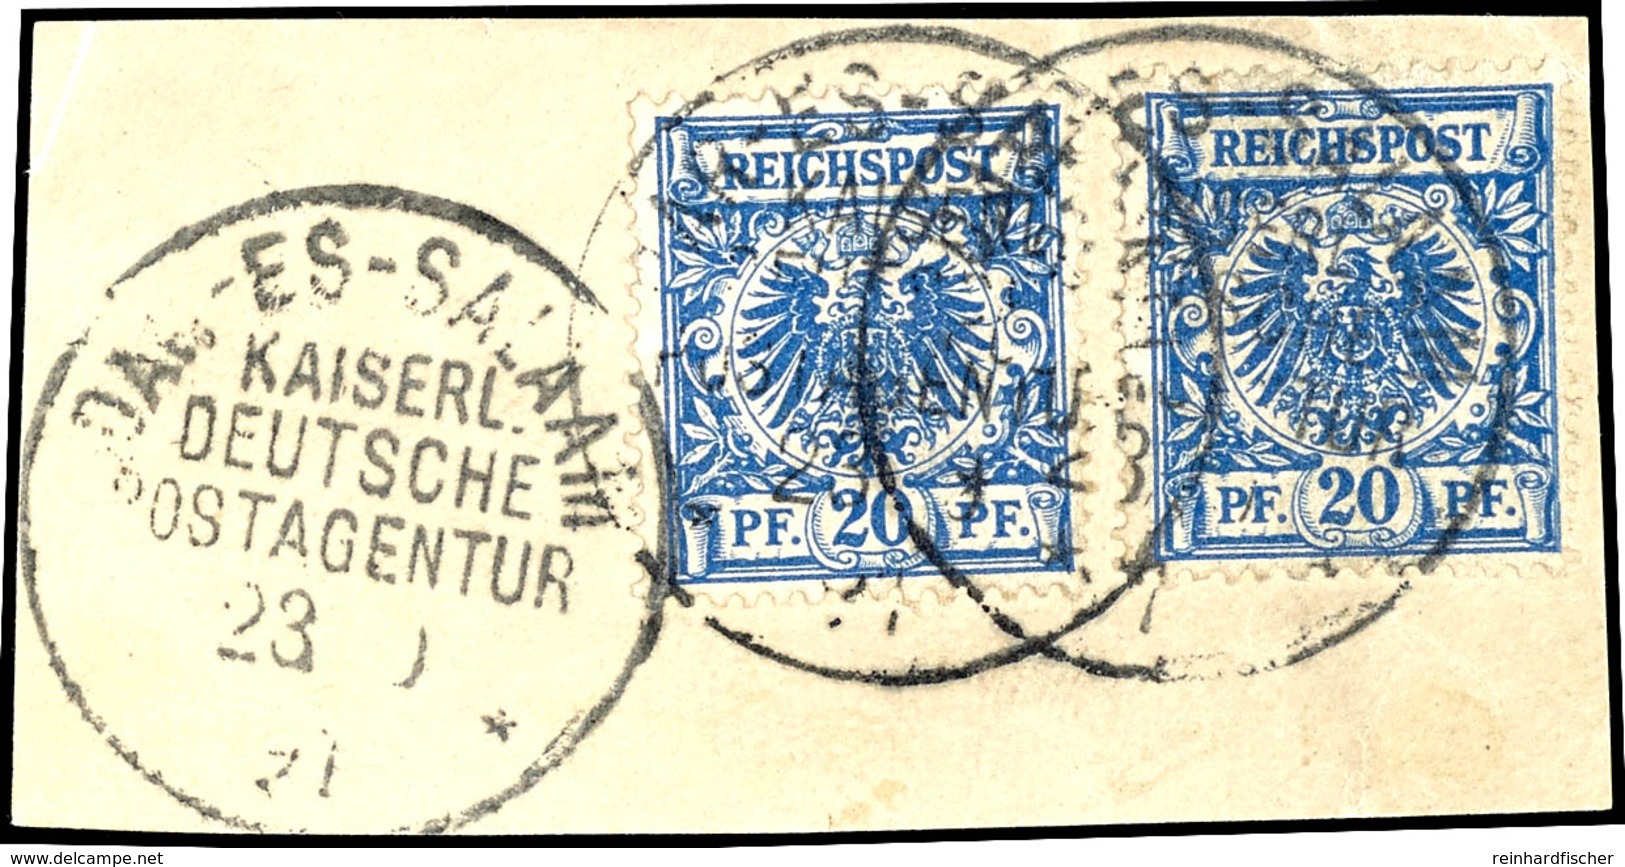 20 Pfennig Blau, Tadelloses Briefstück Mit 2 Exemplaren, Stempel "DAR-ES-SALAAM KAISERL. DEUTSCHE POSTAGENTUR", Gepr Ste - German East Africa